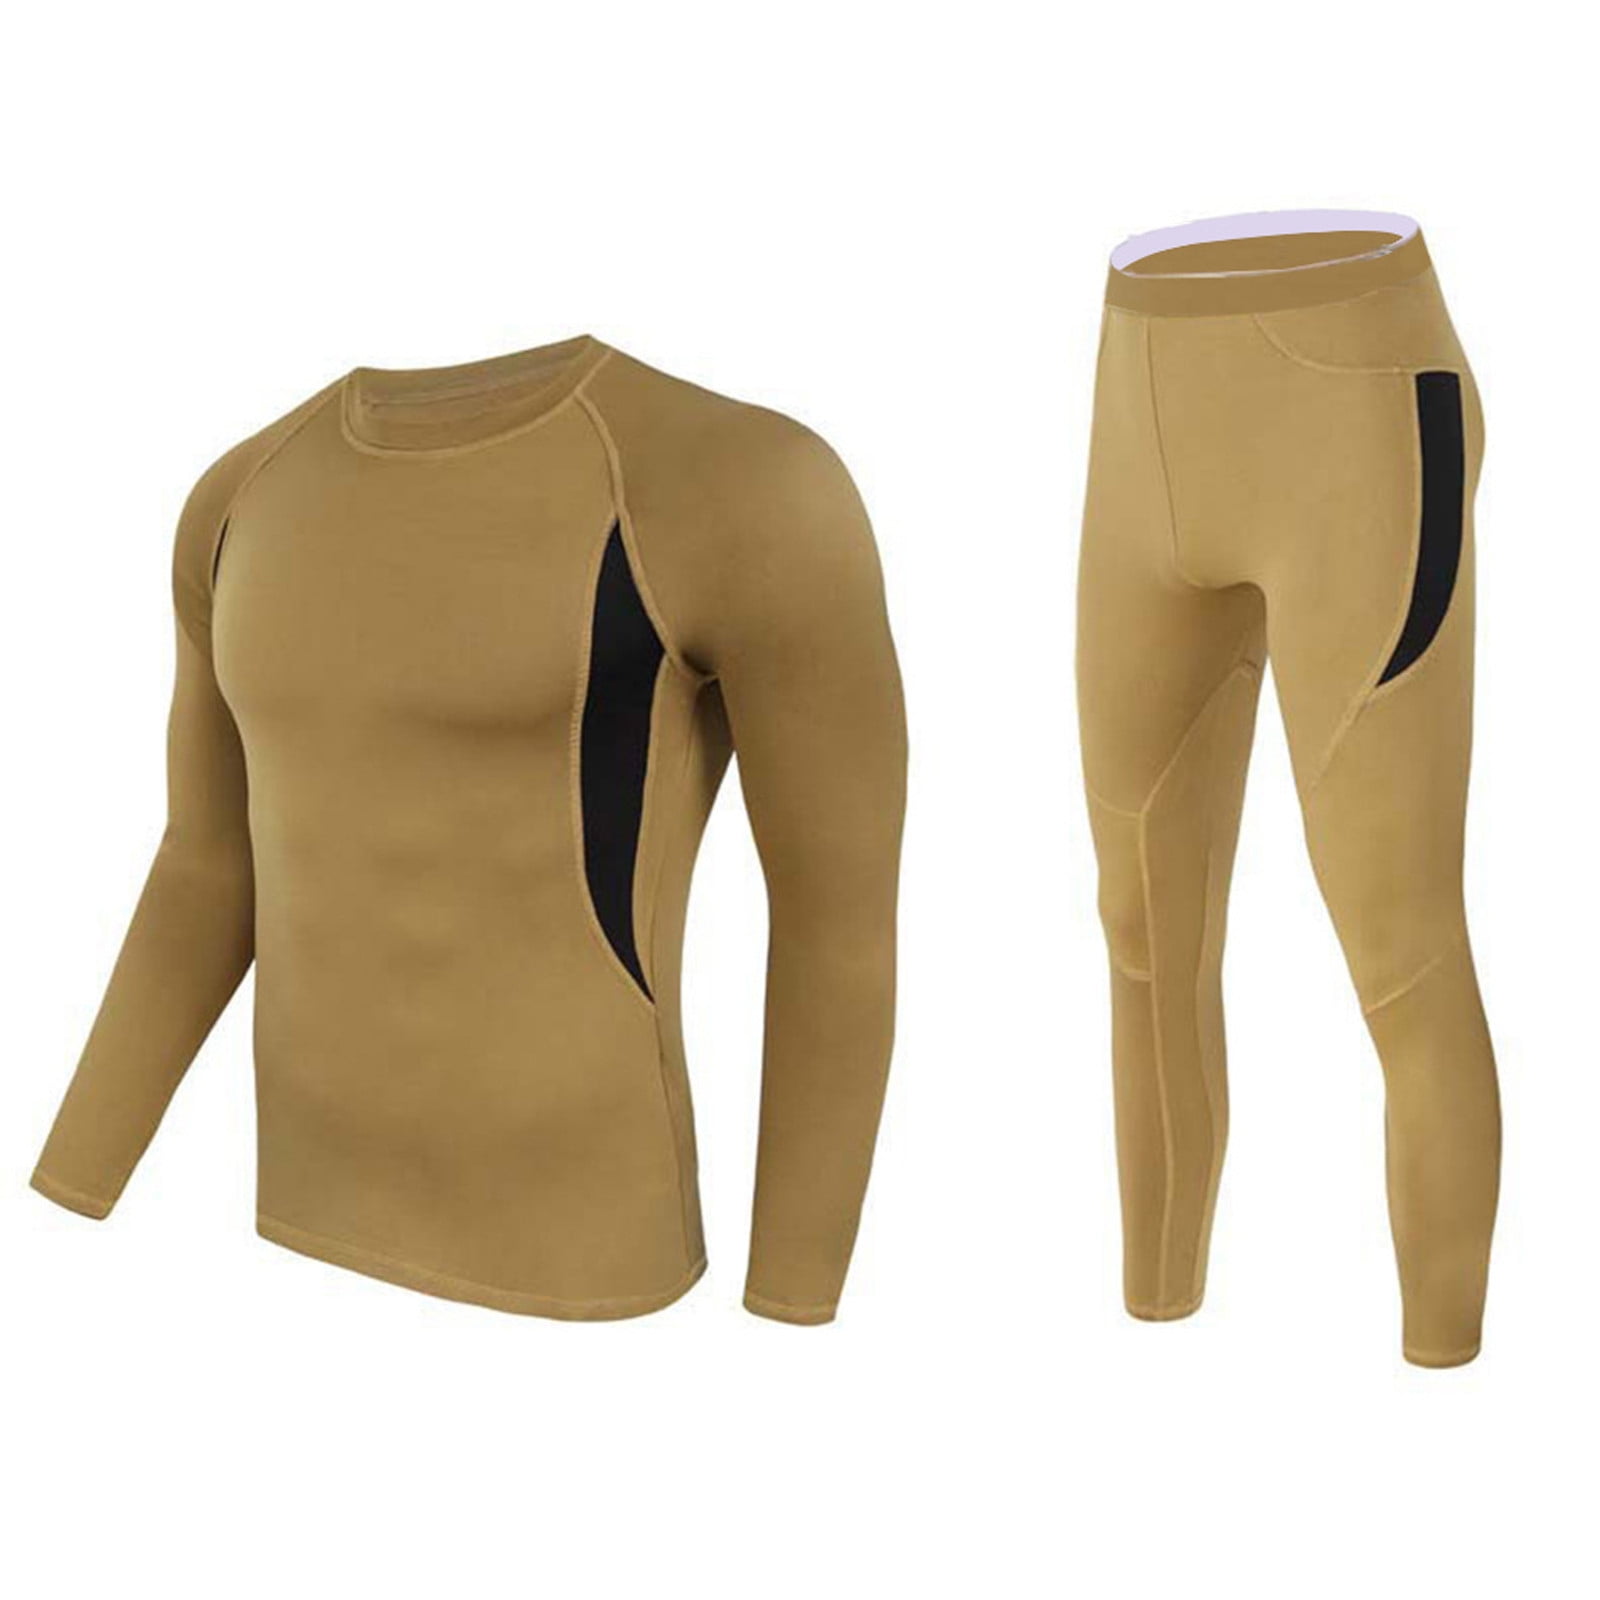 Mens CAMPRI Skiing Base Layer Thermal Long Sleeve Top/Shirt Breathable S M L XL 